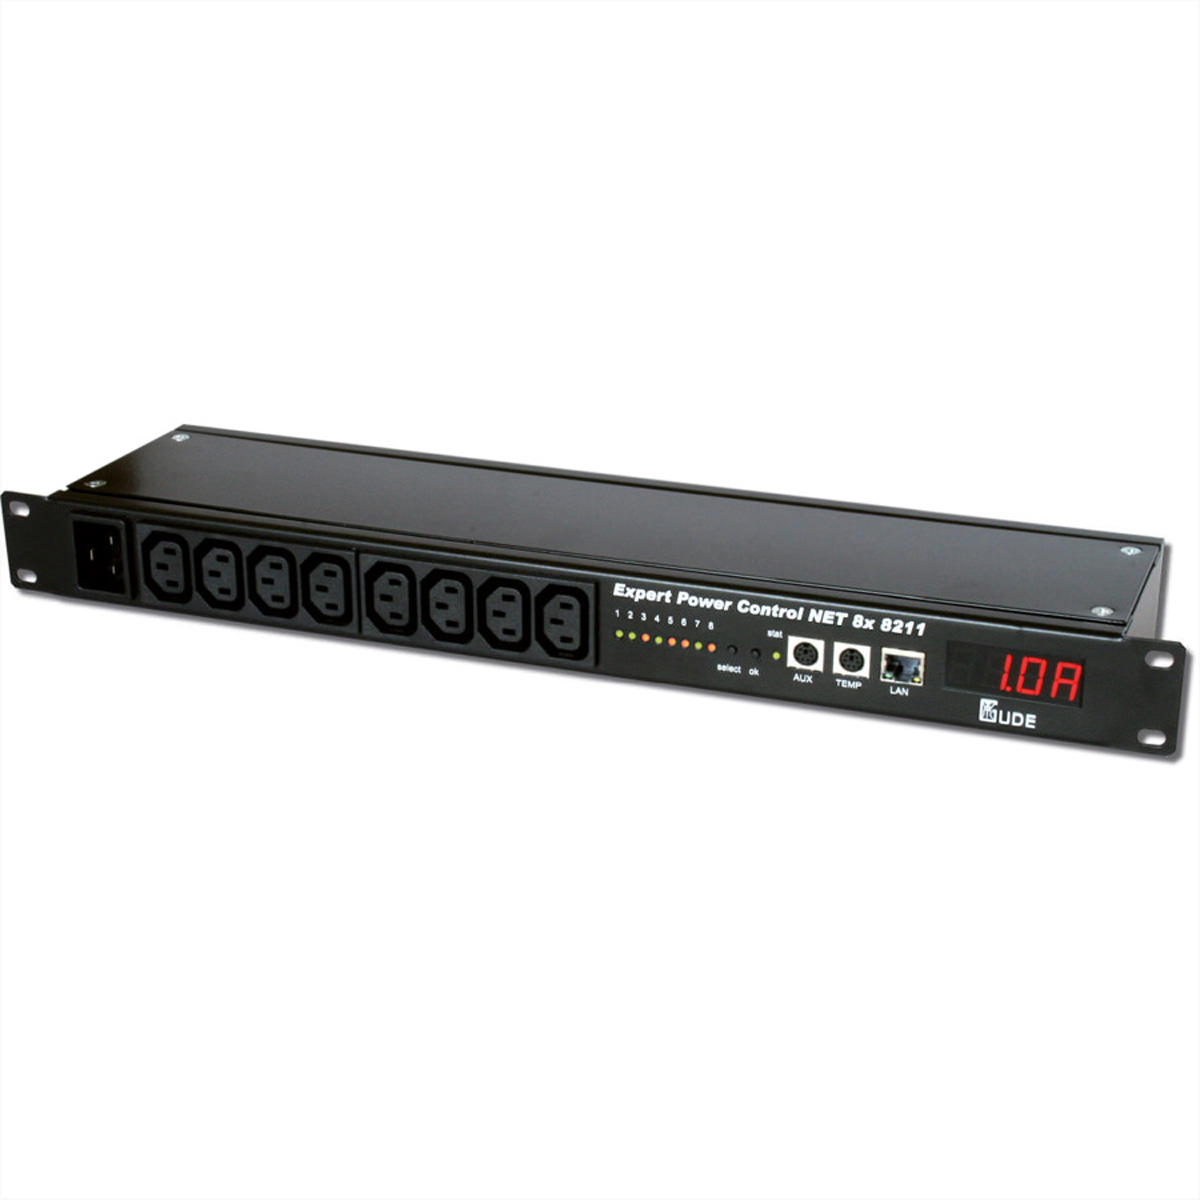 GUDE 8211 Expert Power Control  NET 8x Front mit integrierter Strommessung